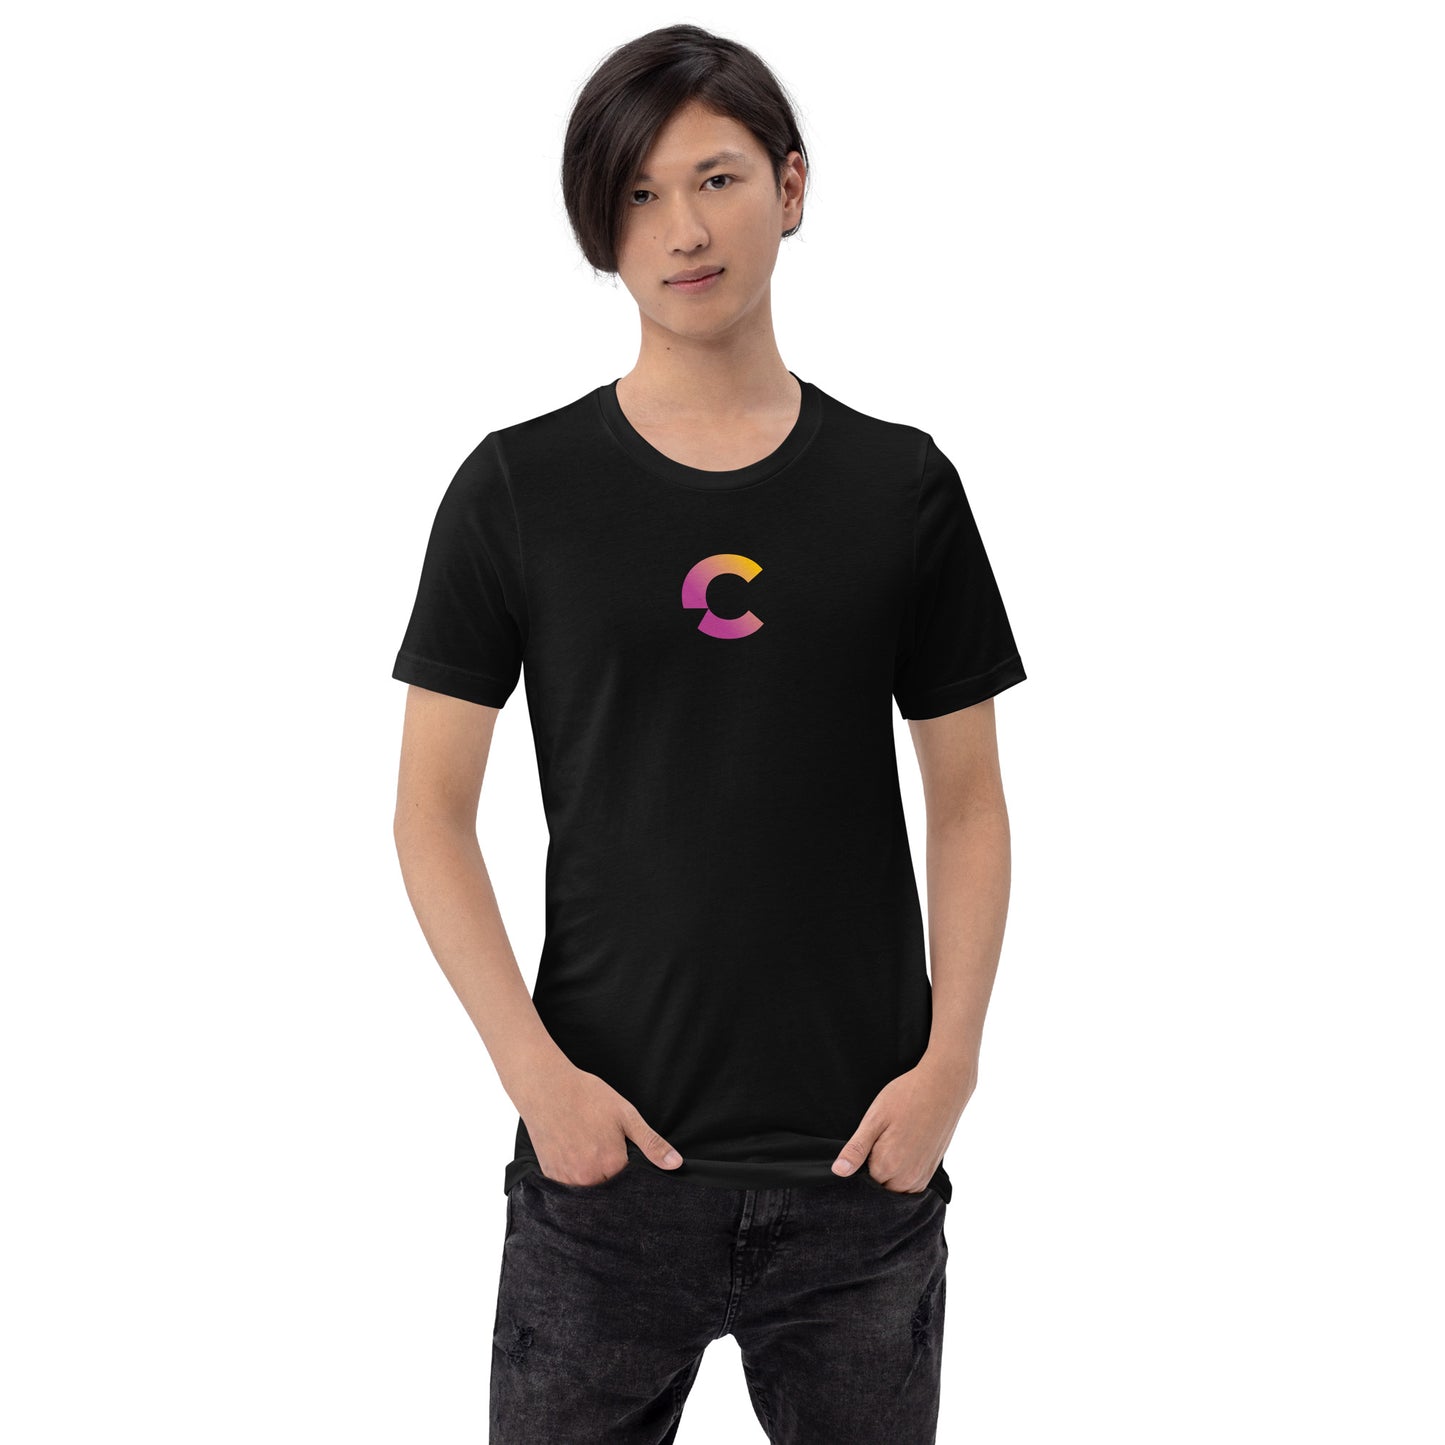 I Am A Content Creator Shirt (Black)